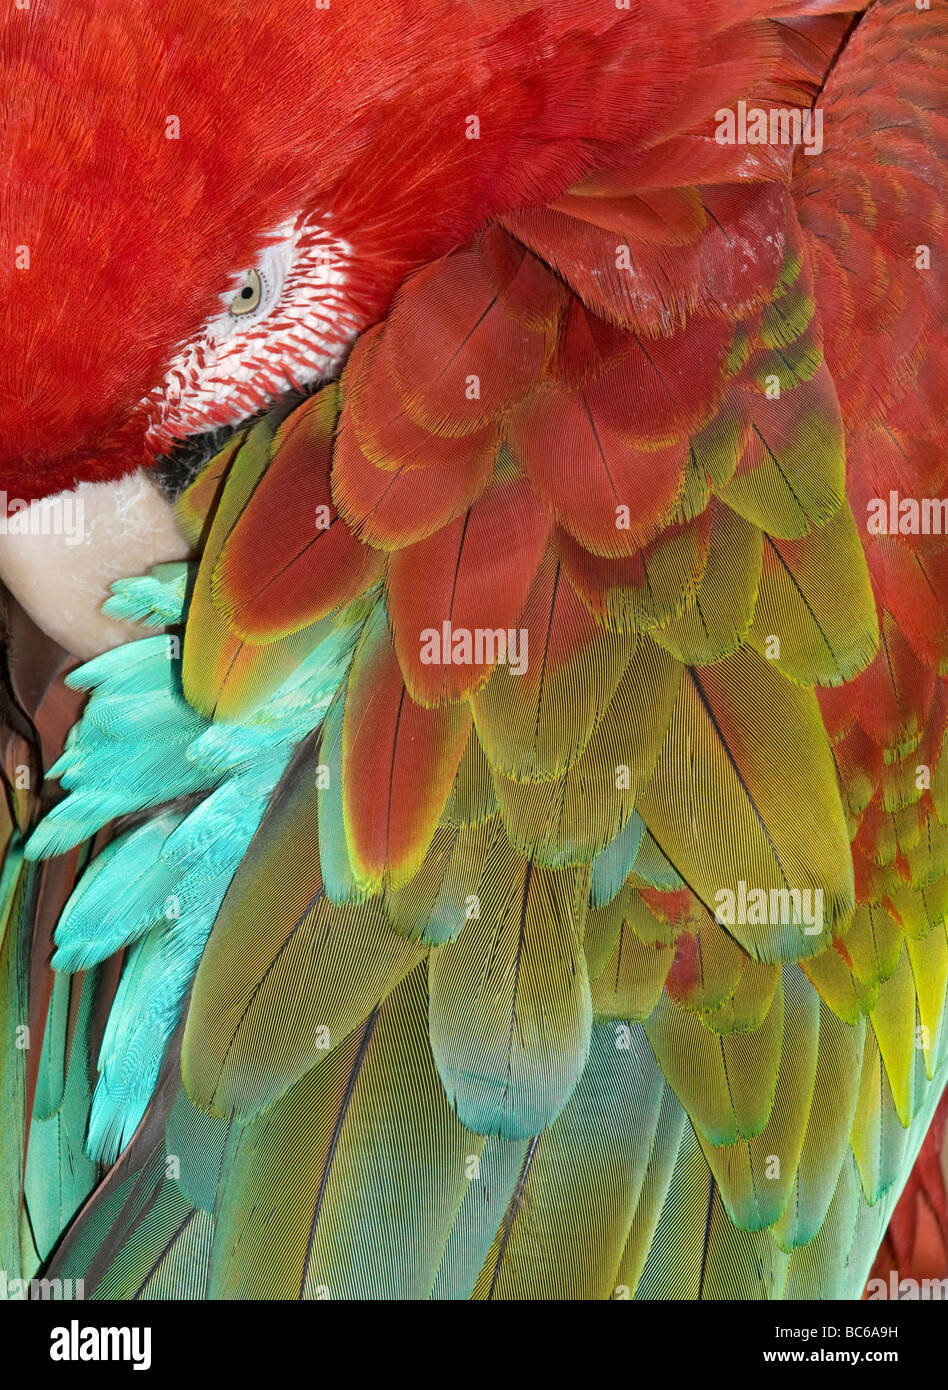 Guacamayo Rojo y verde (Ara chloroptera) Dormir, detalle de plumas Foto de stock